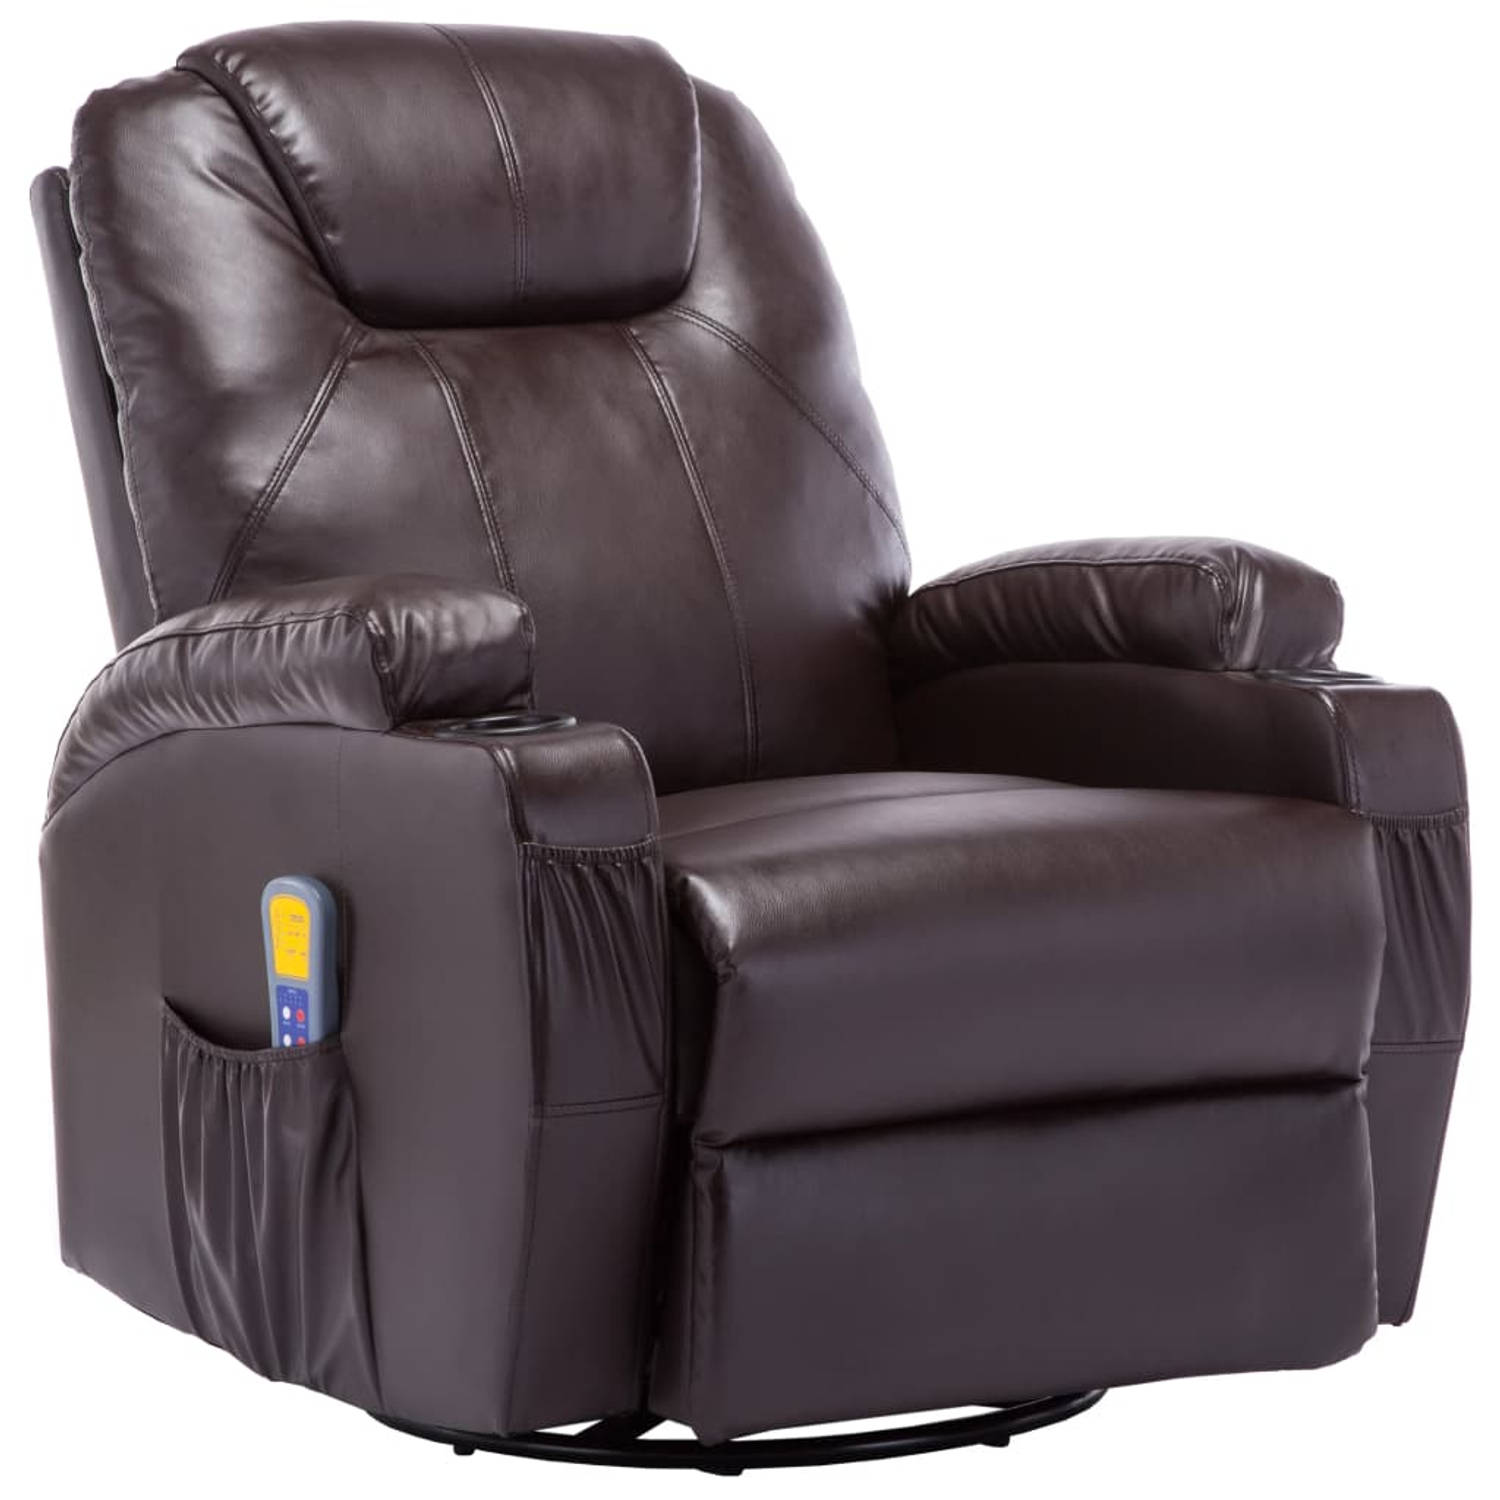 The Living Store Elektrische schommelstoel - bruin - 80x95x100cm - met massage en verwarming